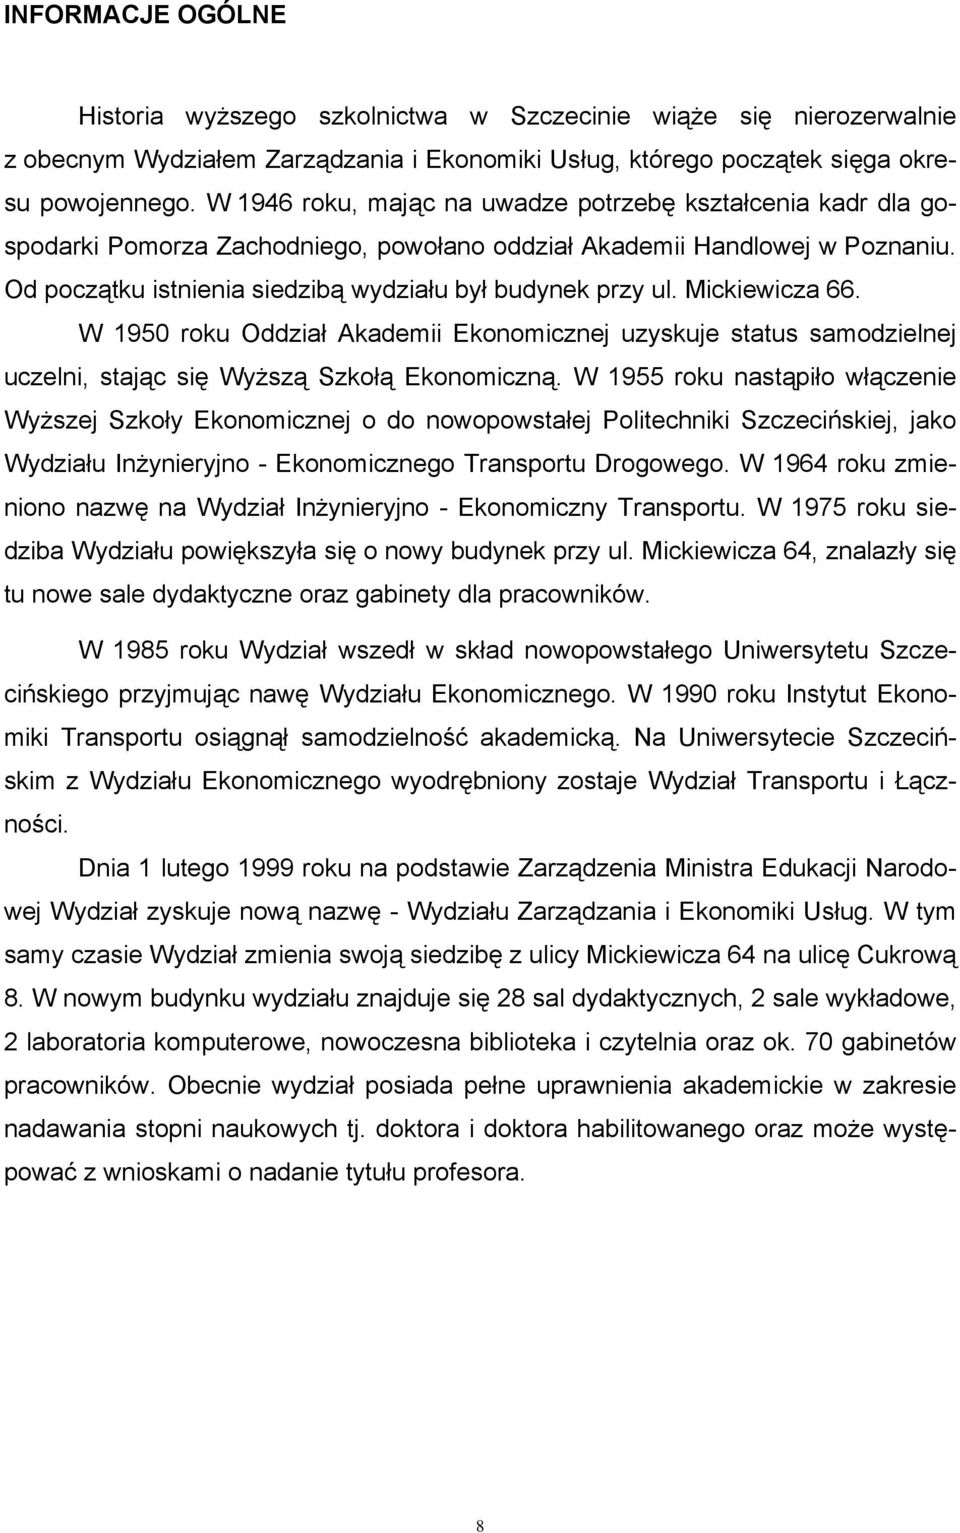 Mickiewicza 66. W 1950 roku Oddział Akademii Ekonomicznej uzyskuje status samodzielnej uczelni, stając się Wyższą Szkołą Ekonomiczną.